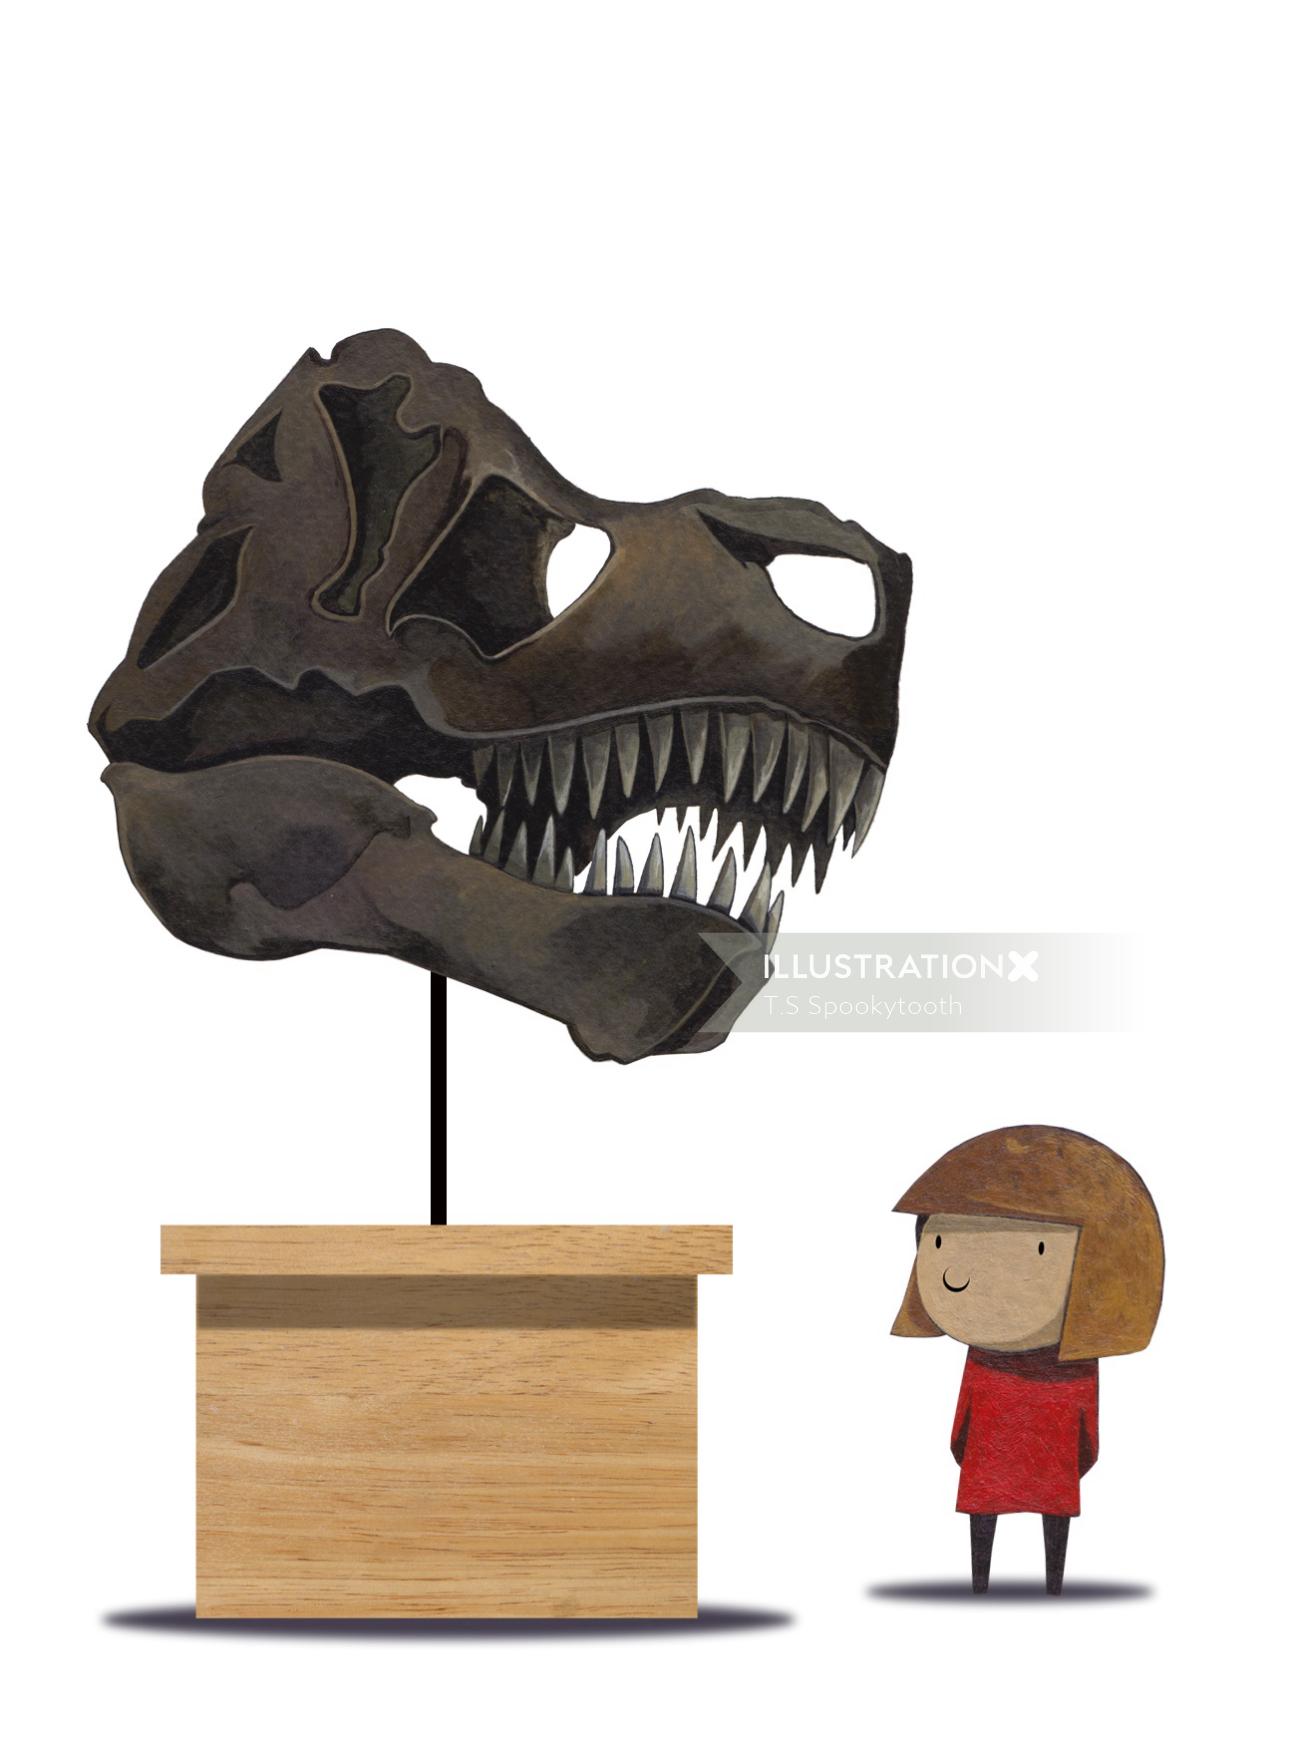 T.Sスプーキートゥースによる恐竜の頭蓋骨のイラスト